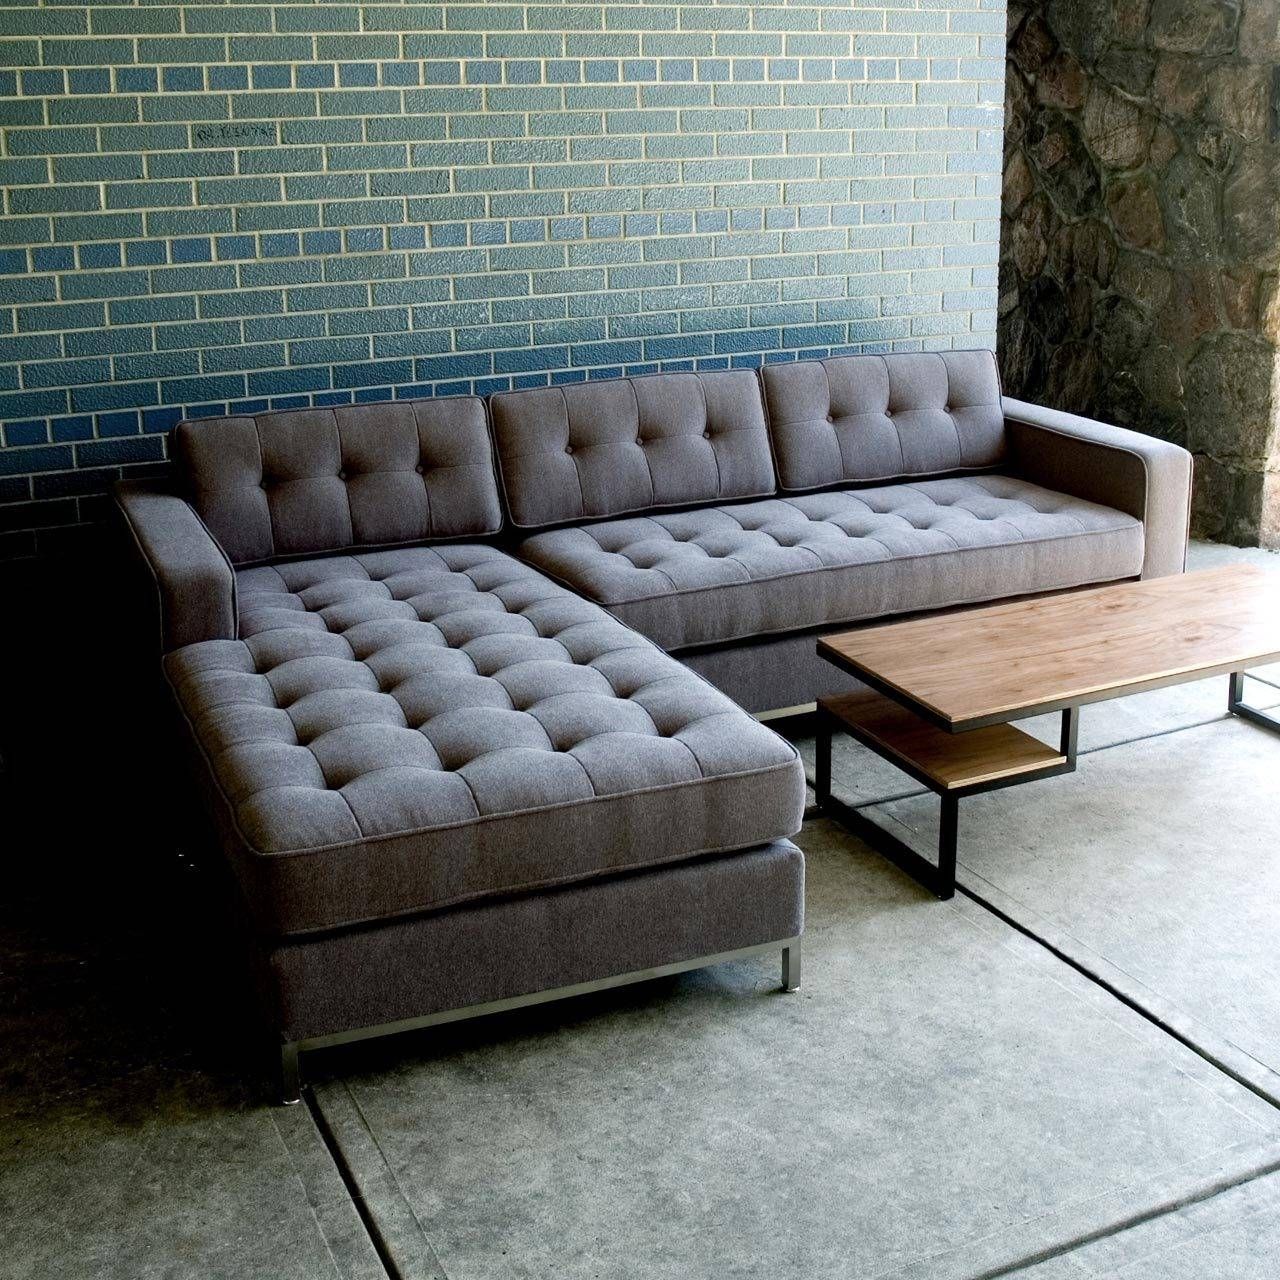 Sofas Center : Diy Sectional Sofa Plans Slipcovers Cover For With Regard To Diy Sectional Sofa (View 13 of 30)